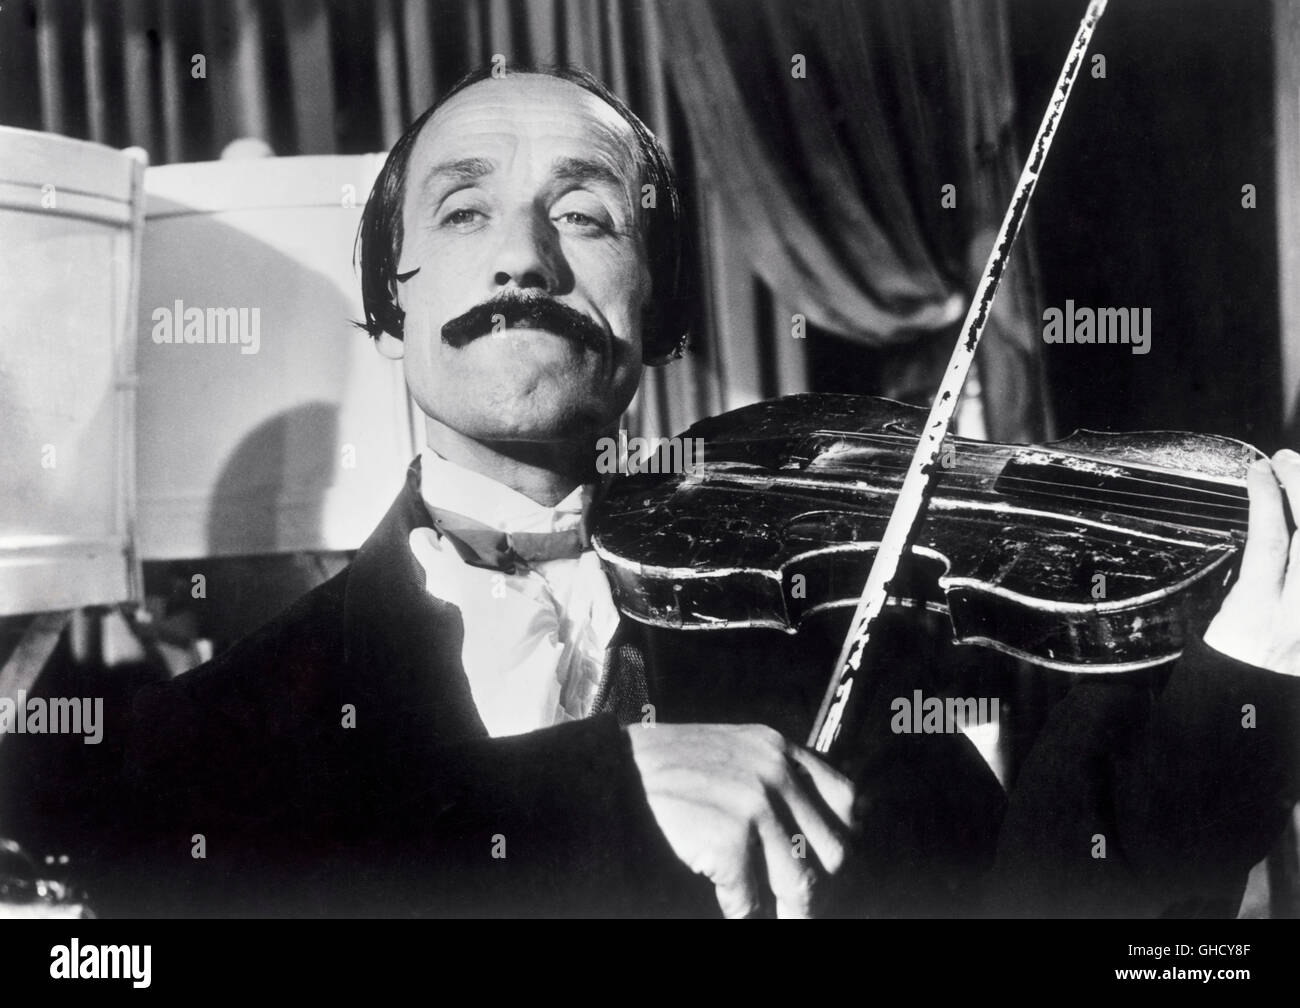 IL MONDO DI NOTTE Italien 1959 Luigi Vanzi Violinist in a scene of the italian music documentary IL Mondo di notte/World by Night. Regie: Luigi Vanzi Stock Photo